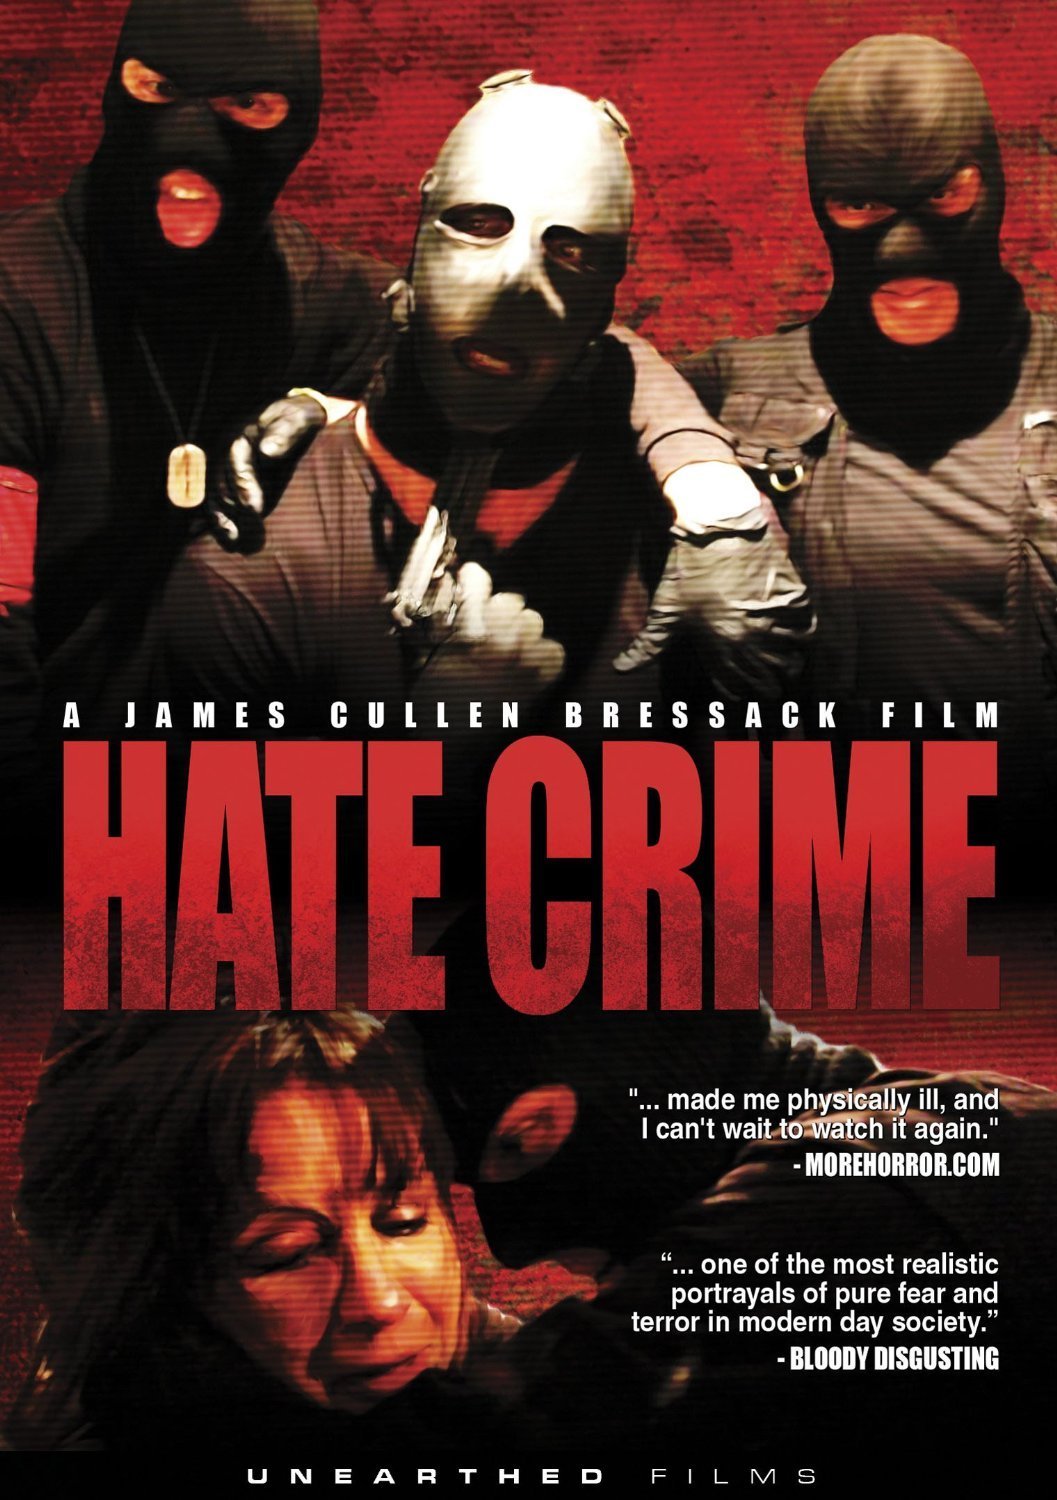 Hate Crime (2012) Screenshot 1